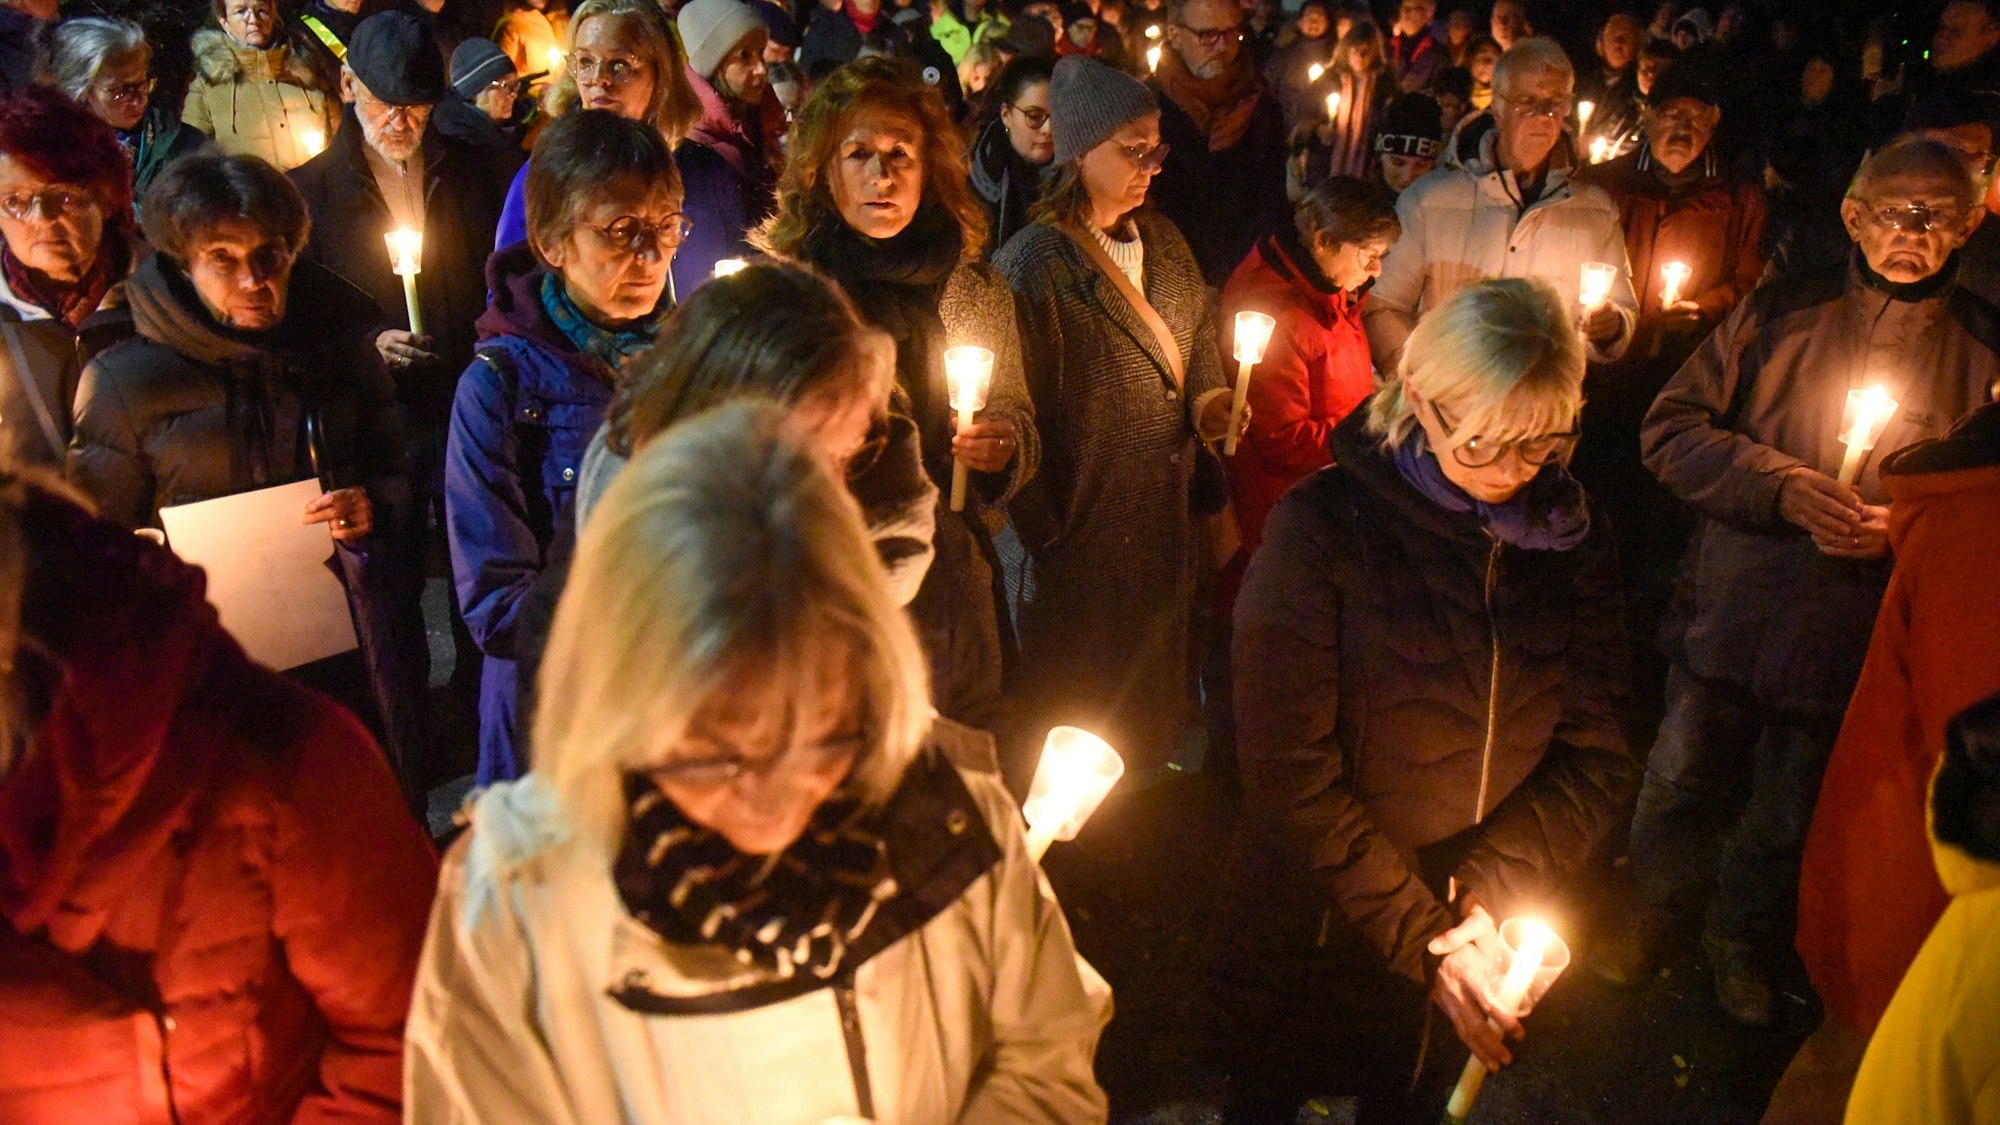 Auf dem Foto sind Teilnehmende des Schweigegangs zu sehen. Sie halten Kerzen in ihren Händen.